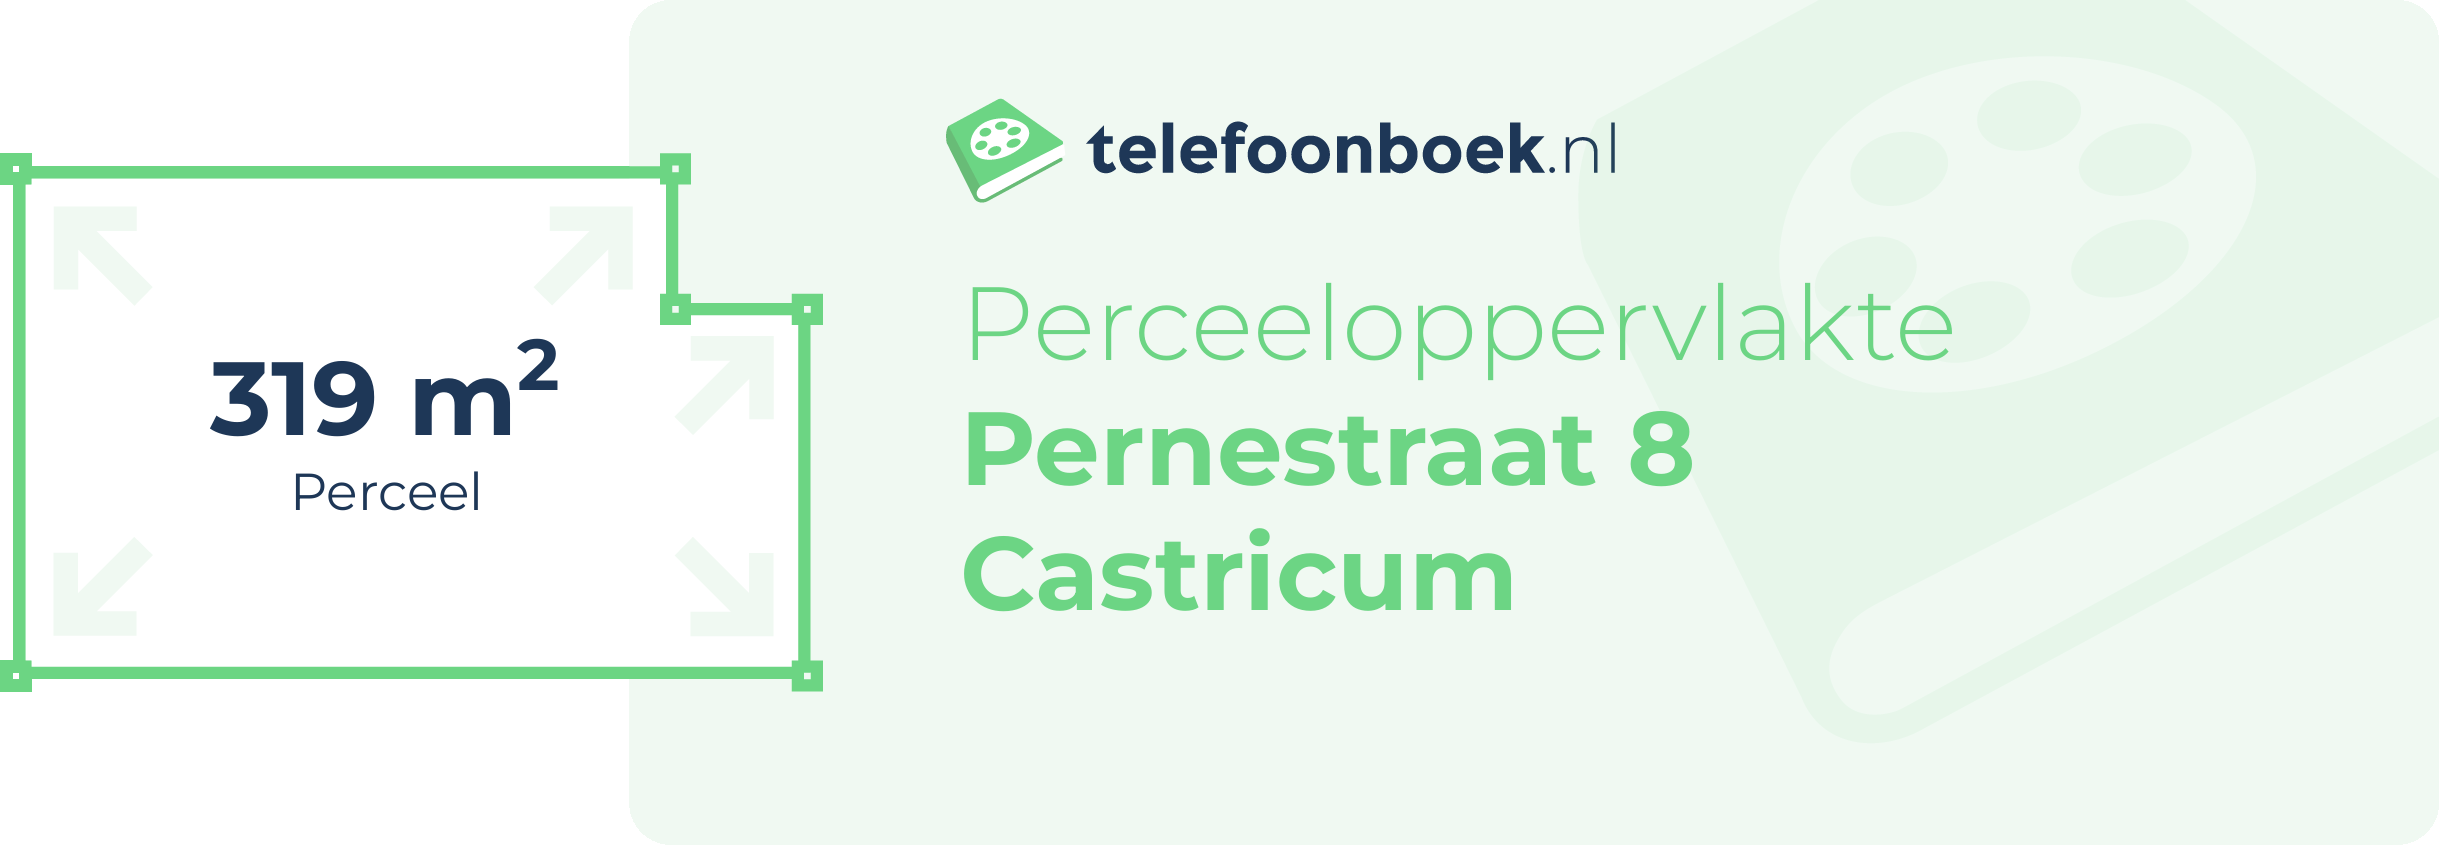 Perceeloppervlakte Pernestraat 8 Castricum